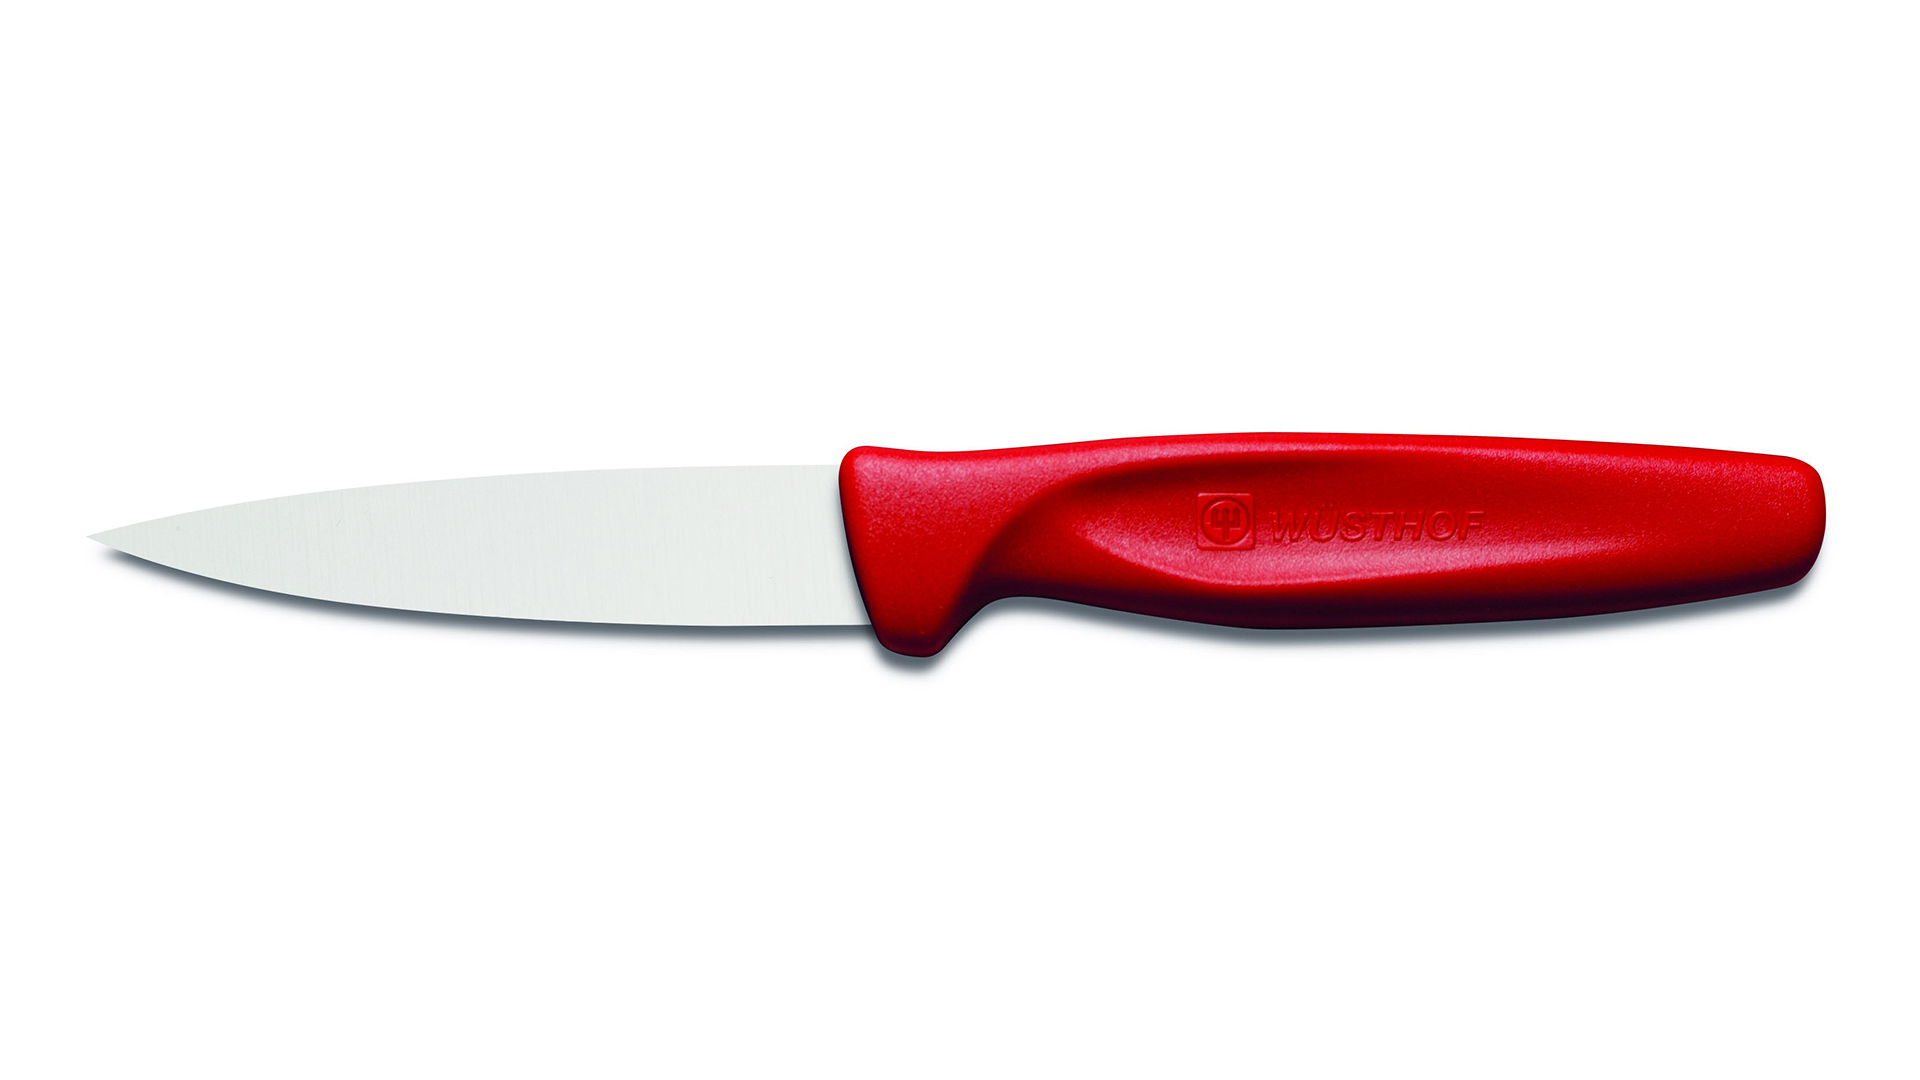 Нож для овощей WUESTHOF Sharp Fresh Colourful 8см, рукоятка красная